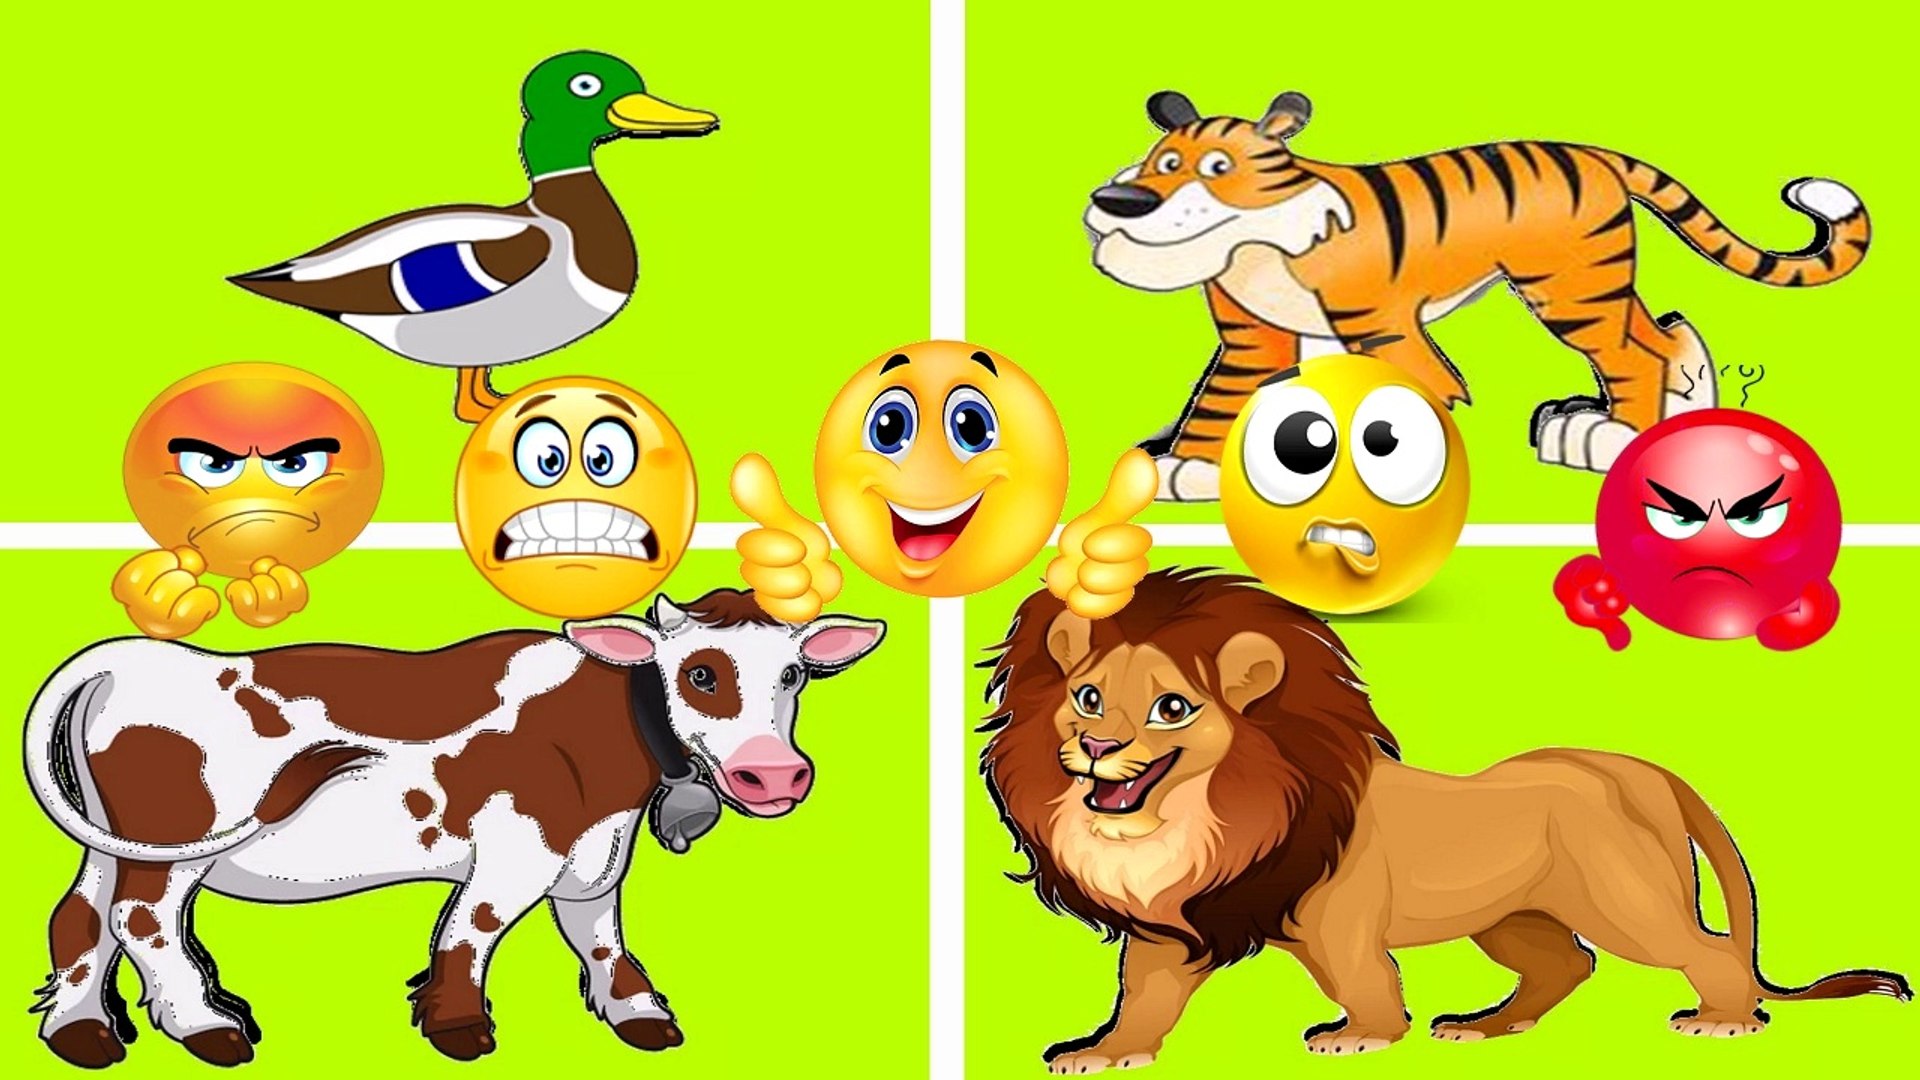 العاب تركيب الحيوانات للاطفال - مع اغنية حيوانات المزرعة - فيديو Dailymotion